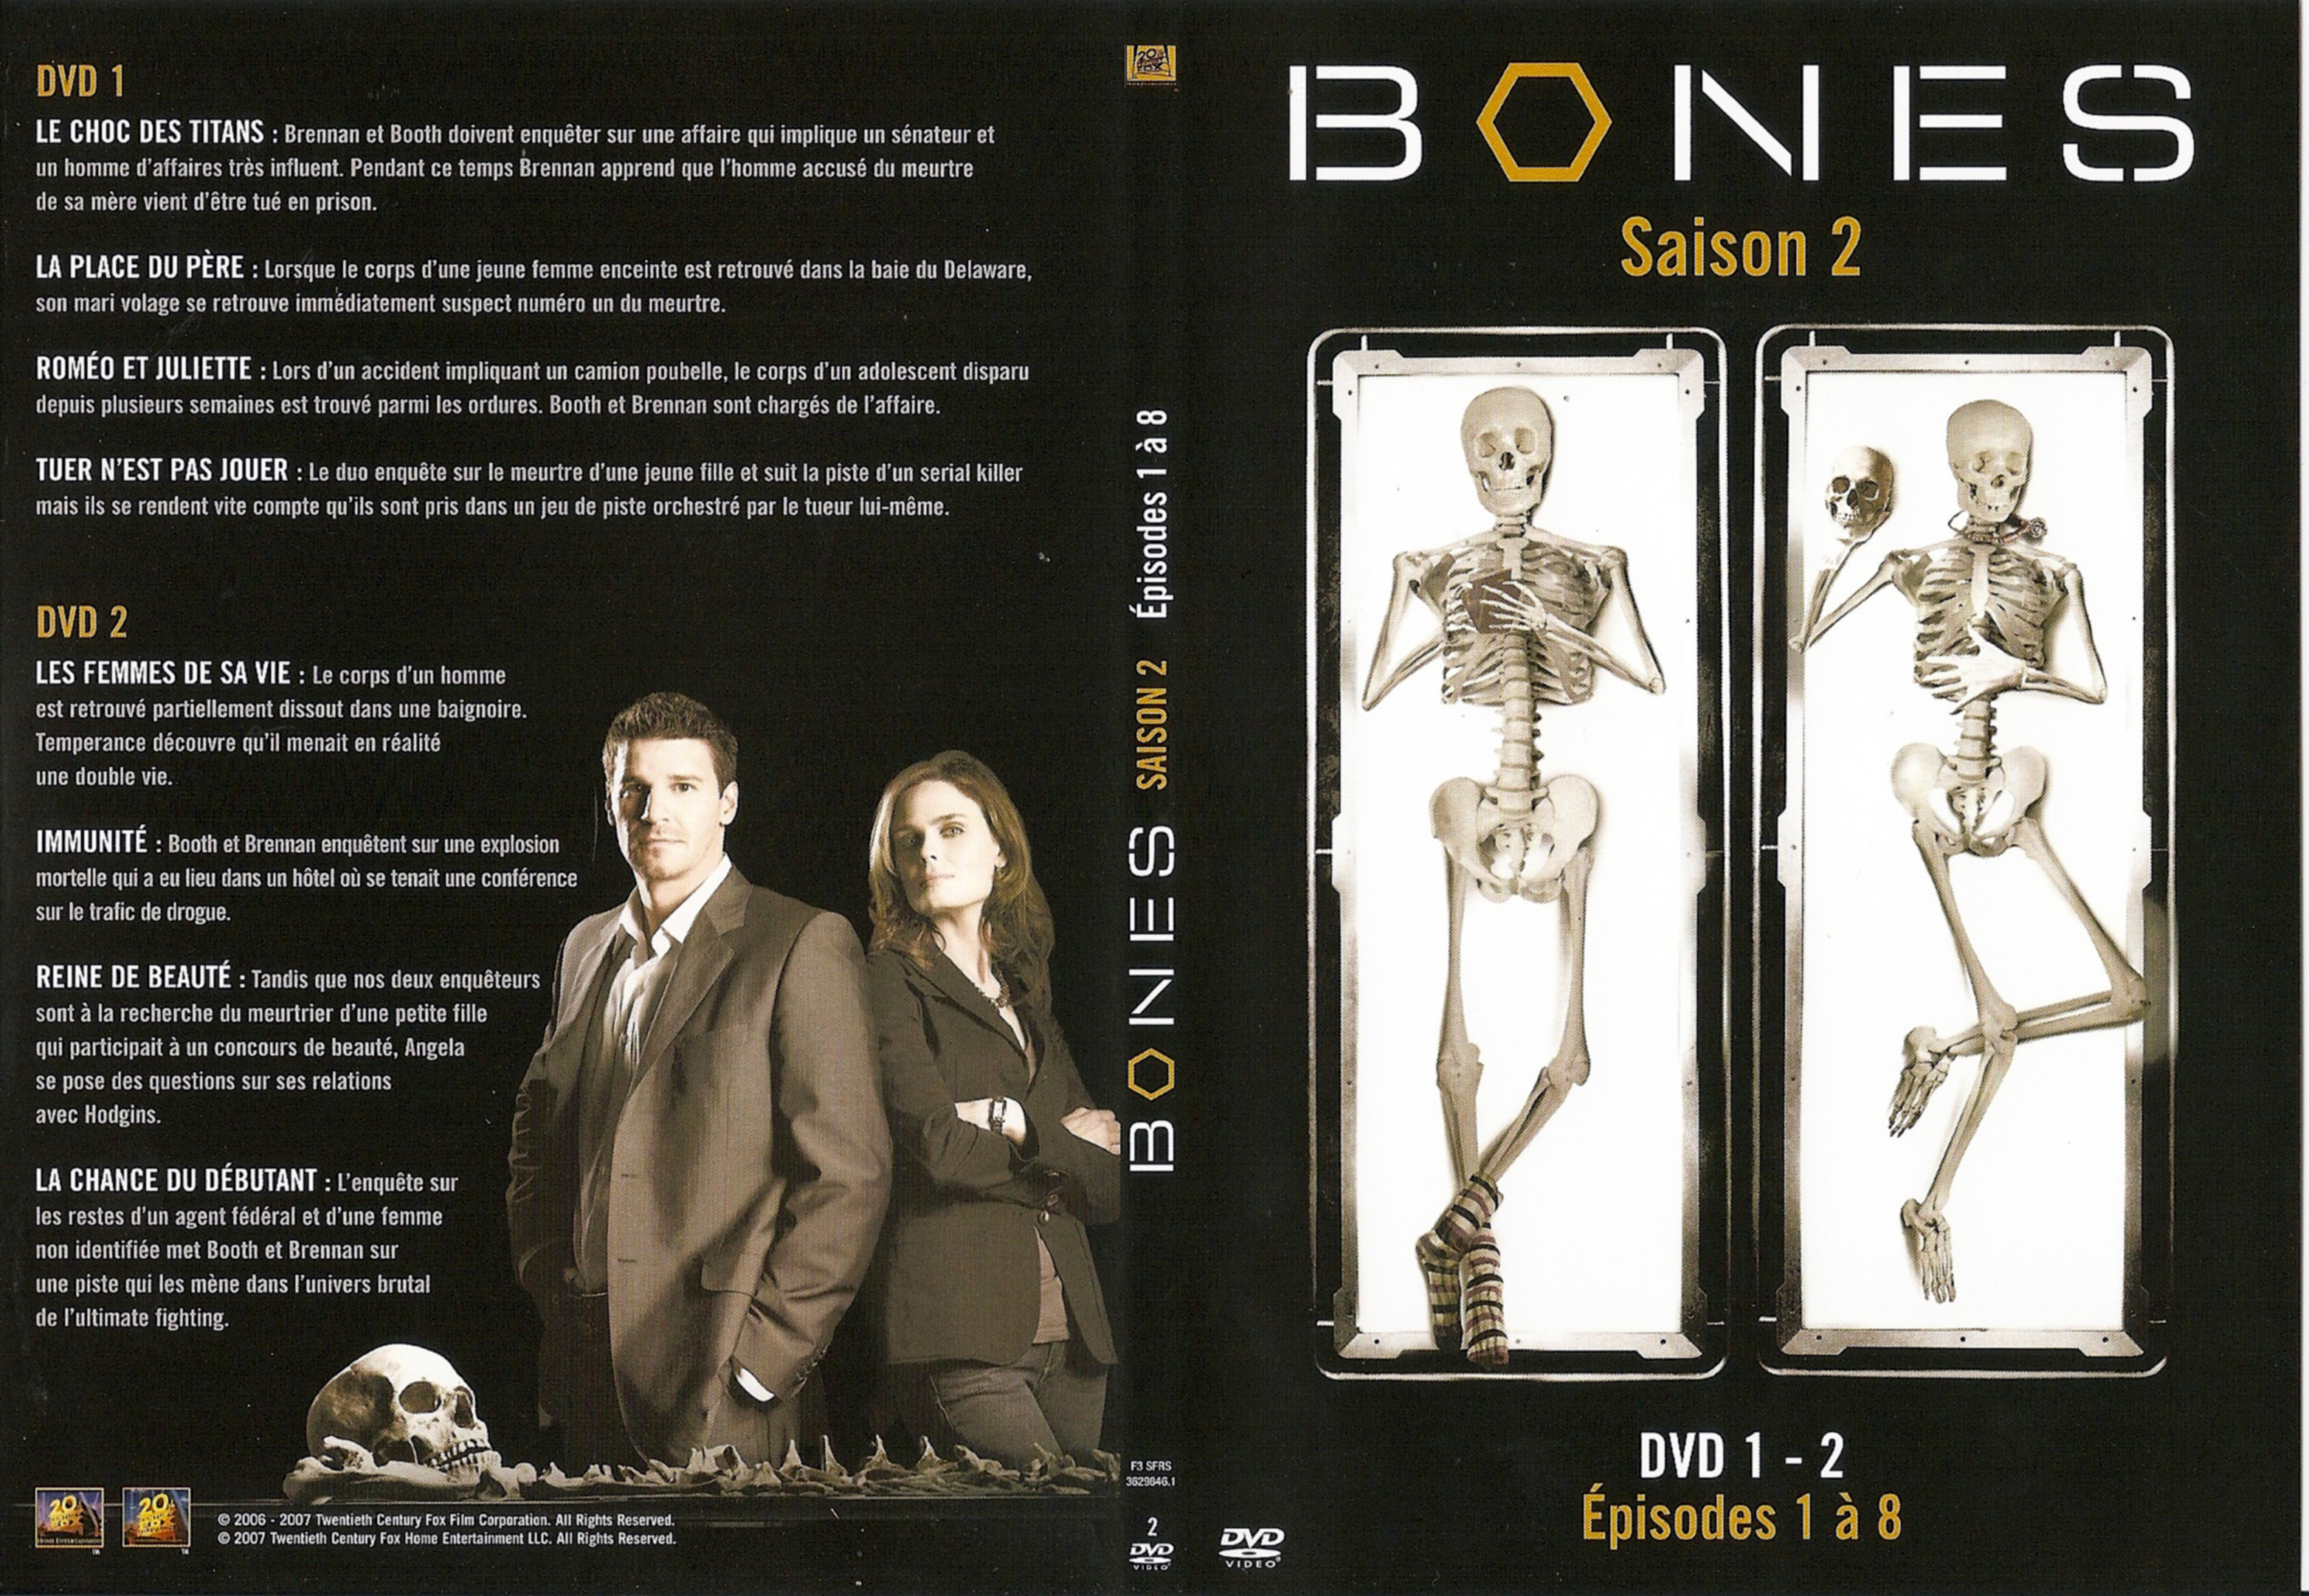 Jaquette DVD Bones Saison 2 DVD 1